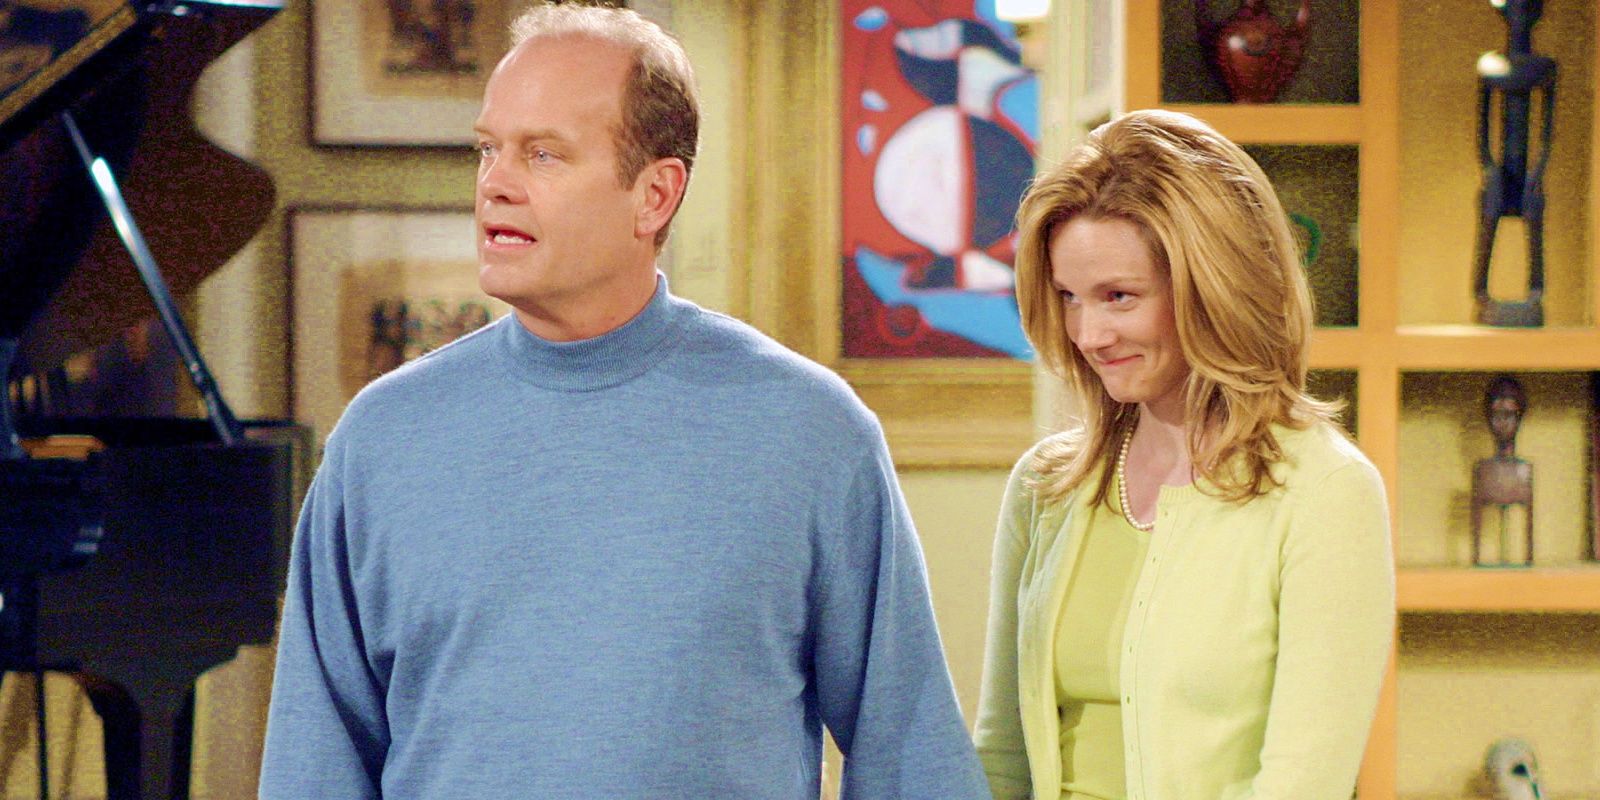 Frasier Crane and Charlotte holding hands in Frasier season 11